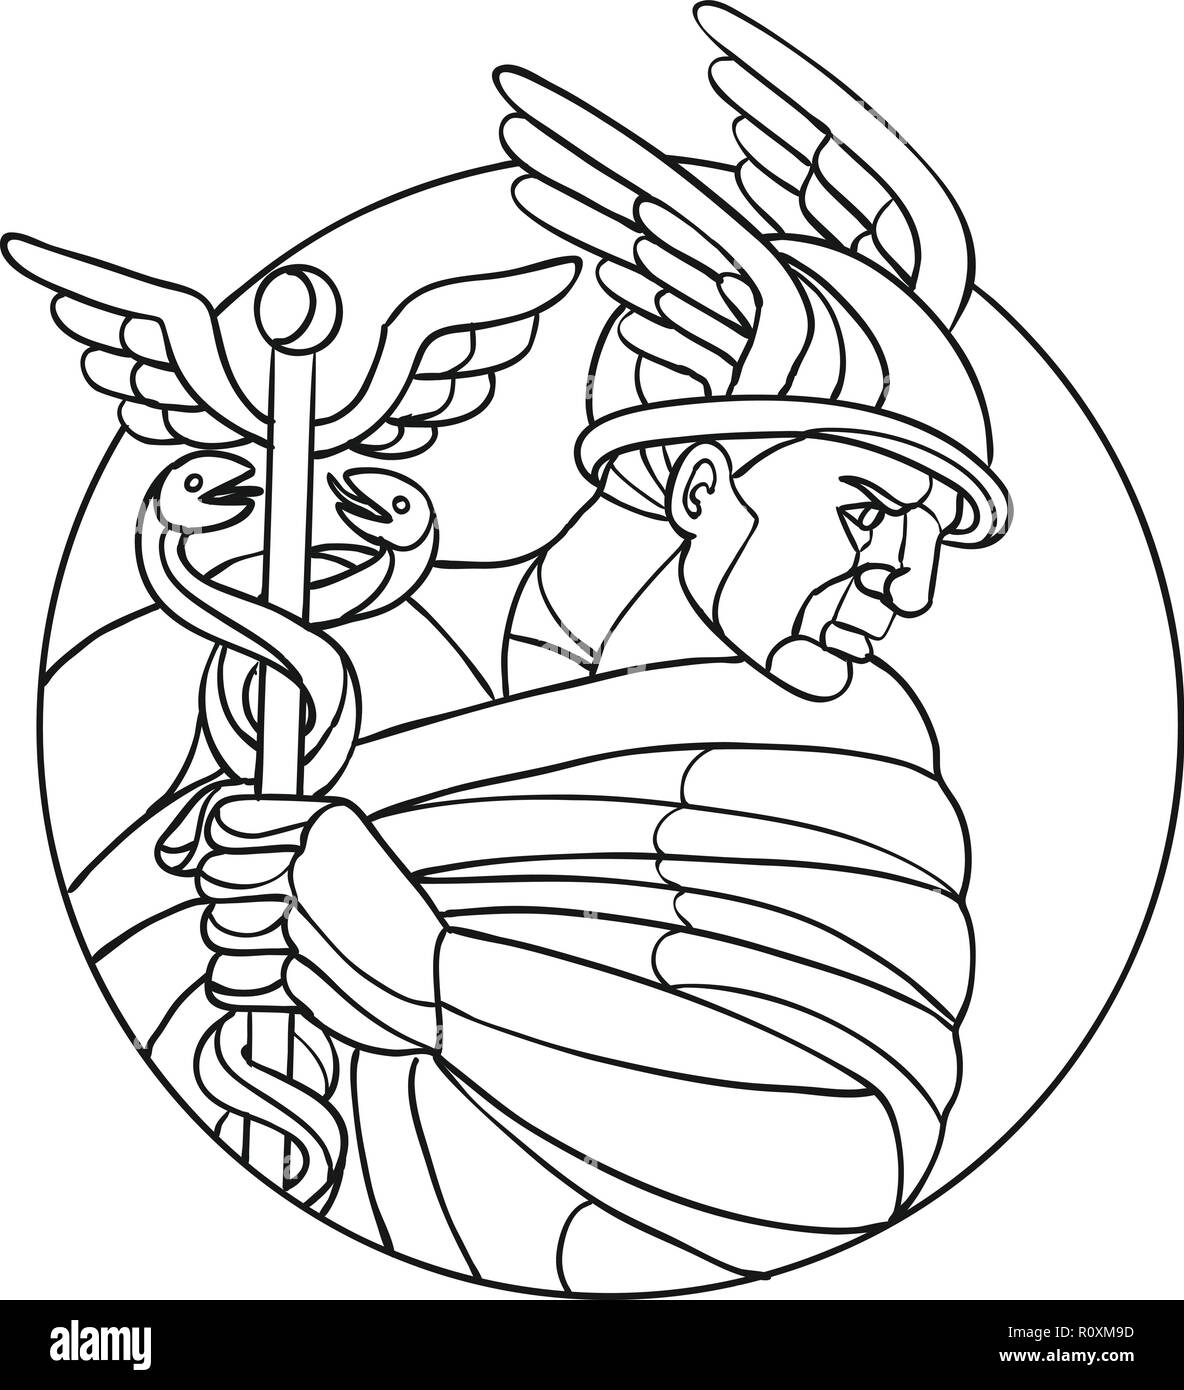 Mosaik low polygon Stil Abbildung von Merkur, dem römischen Gott der Kaufleute, Händler, Reisende, Transporter Dieben und trickbetrügern oder in der Griechischen ersetzen Stock Vektor